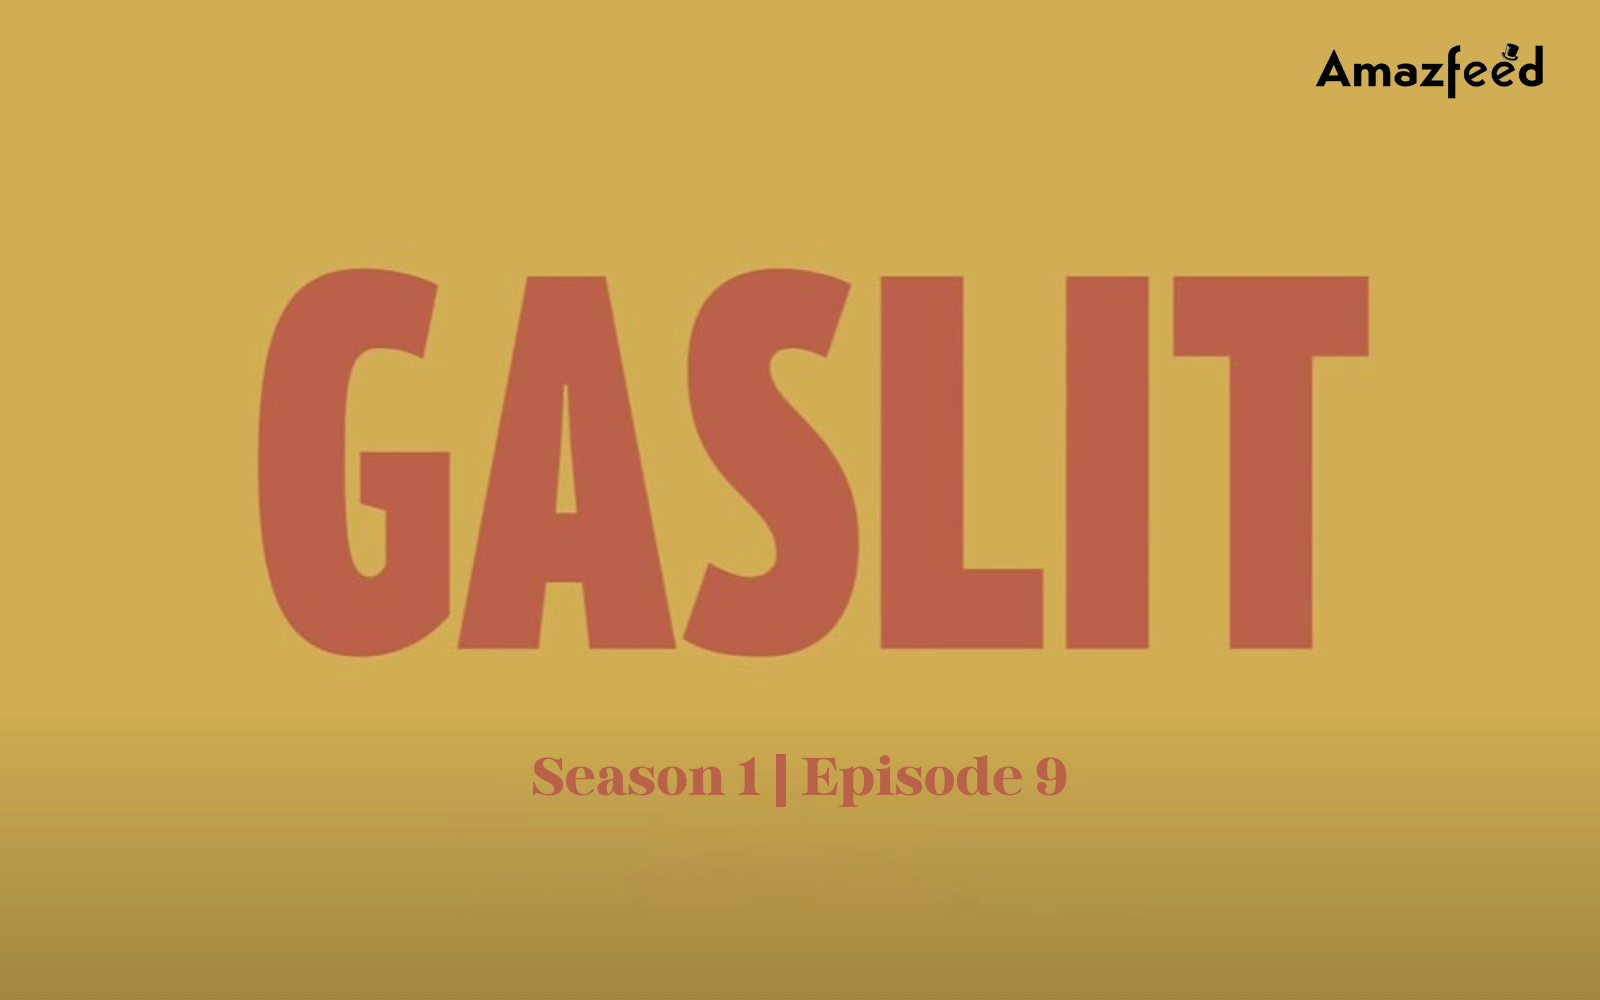 Gaslit Season 1 Episode 9 Release date